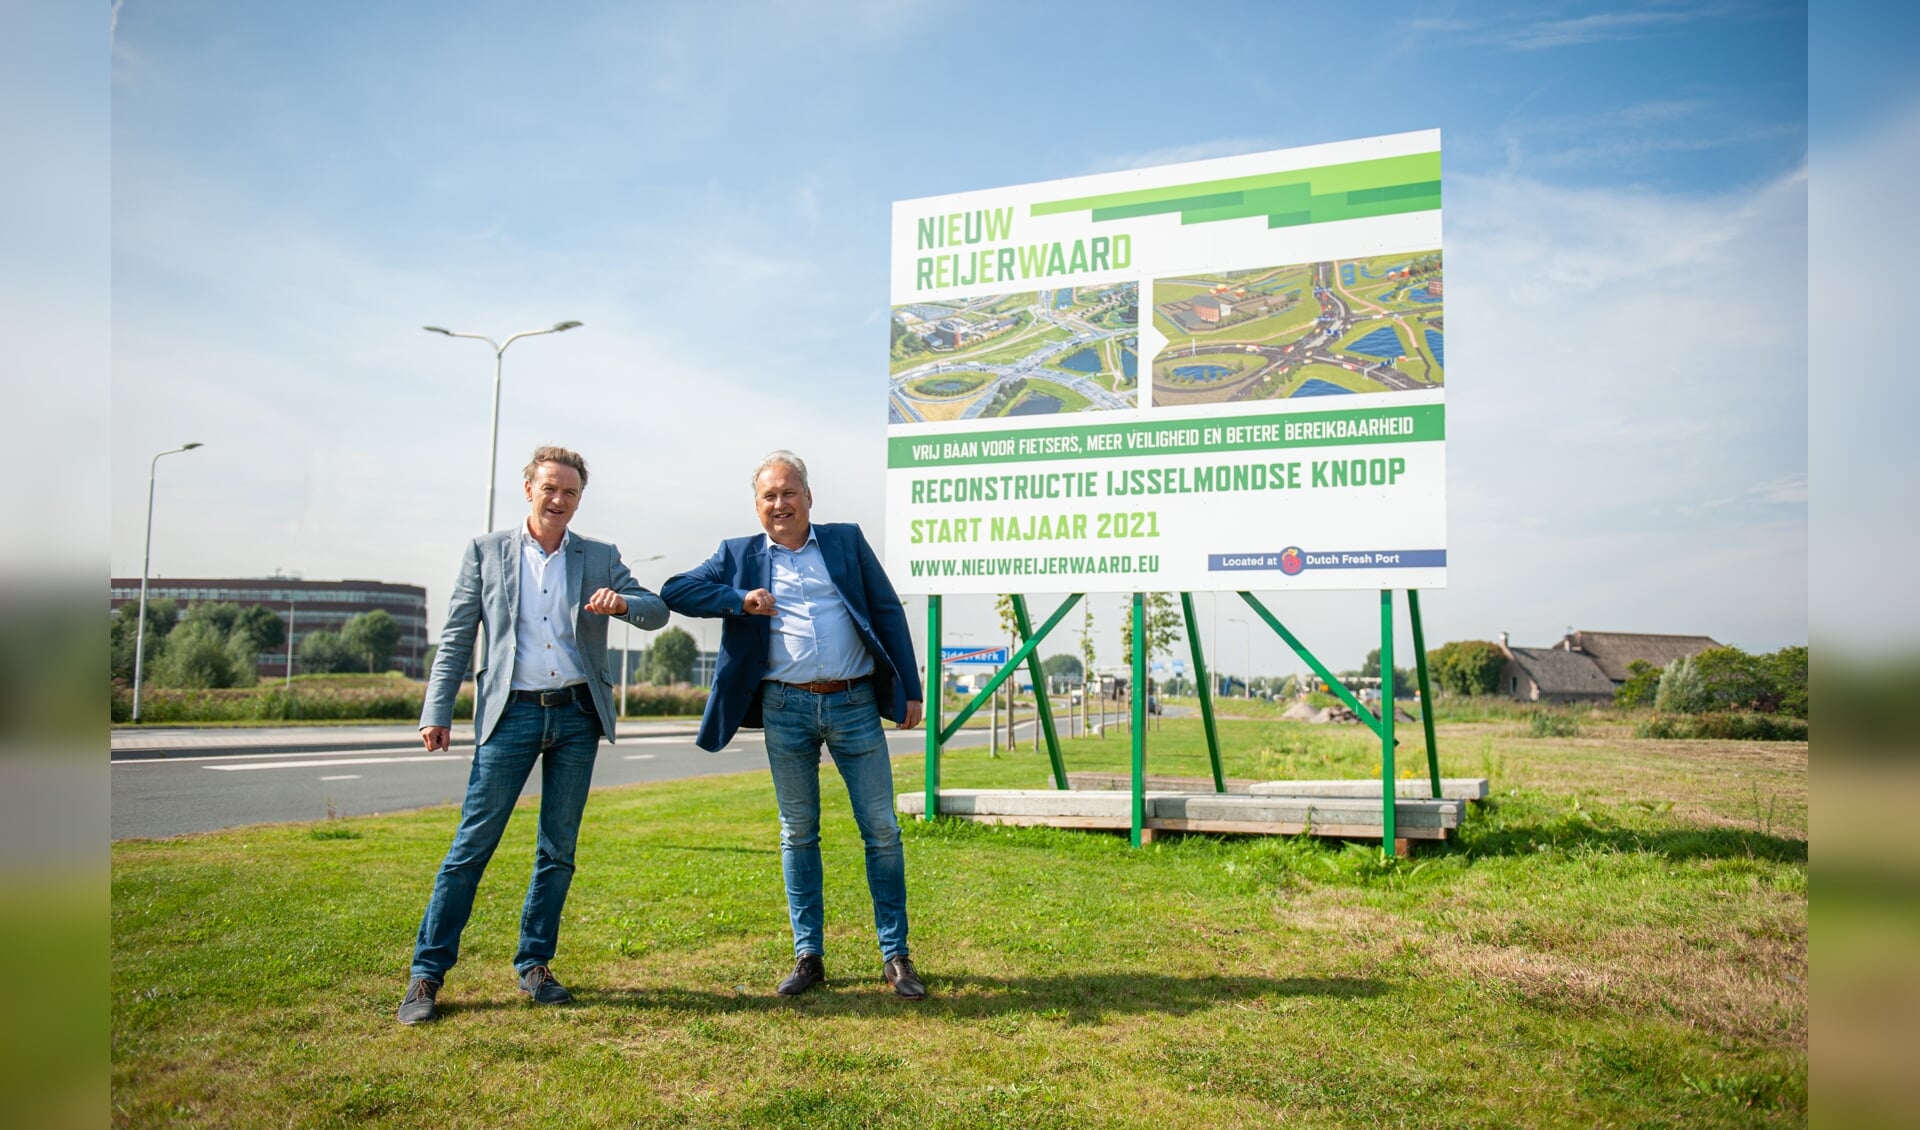 Gert-Jan Metselaar van de GRNR en Pieter Ahsman van KWS bij de aankondiging van de werkzaamheden aan de IJsselmondse Knoop.